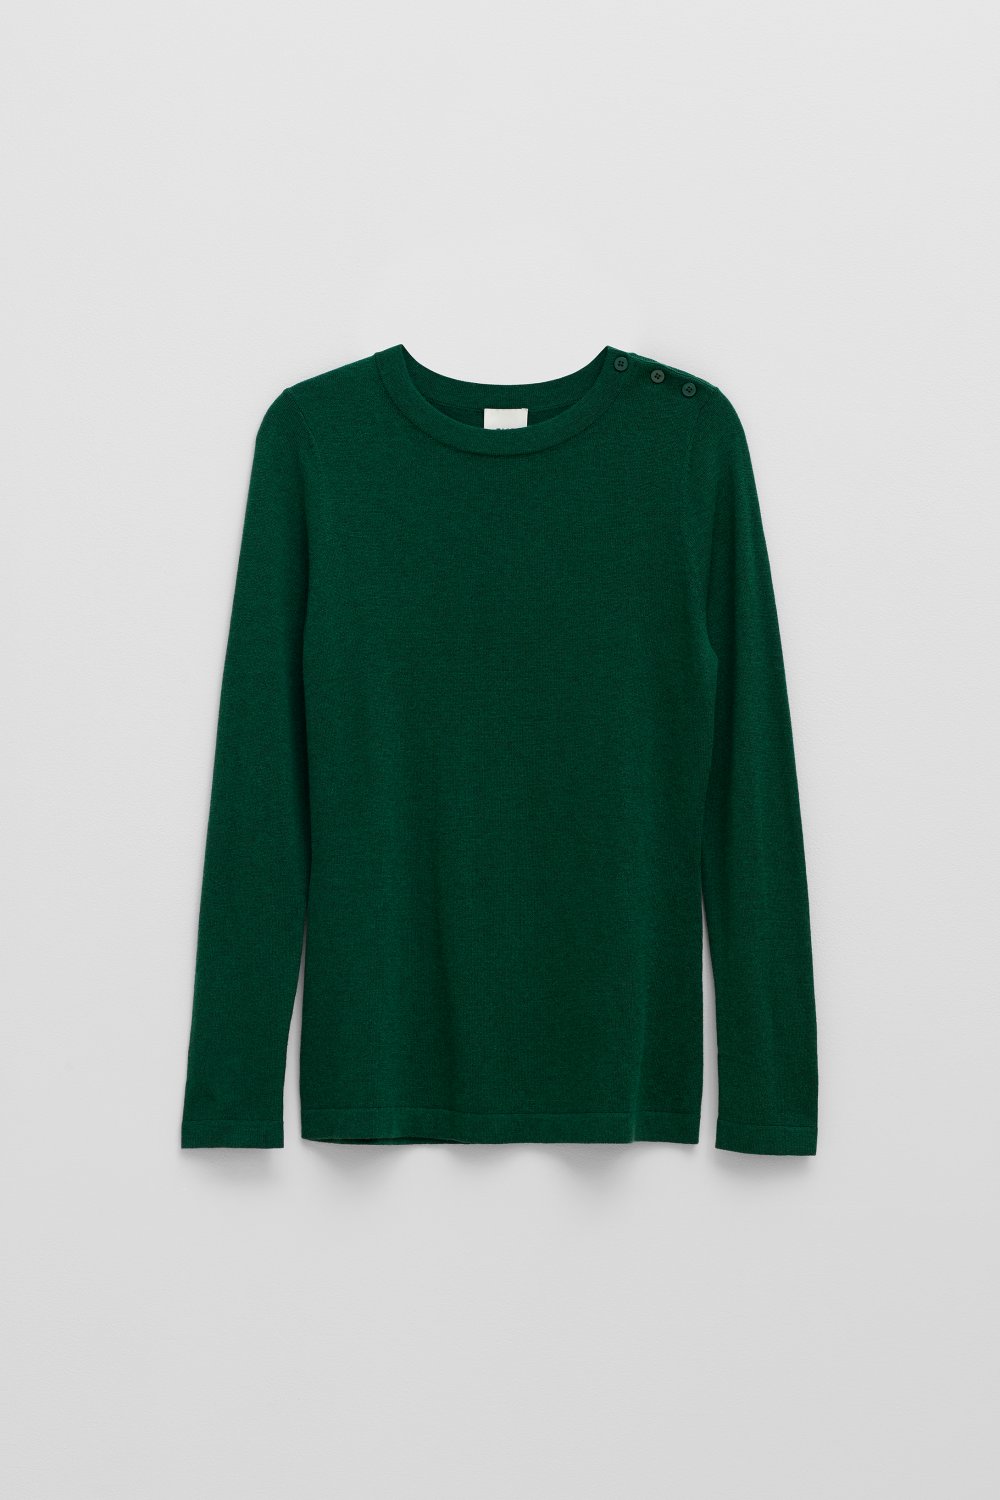 elk-kevyt-sweater-fern-green 7